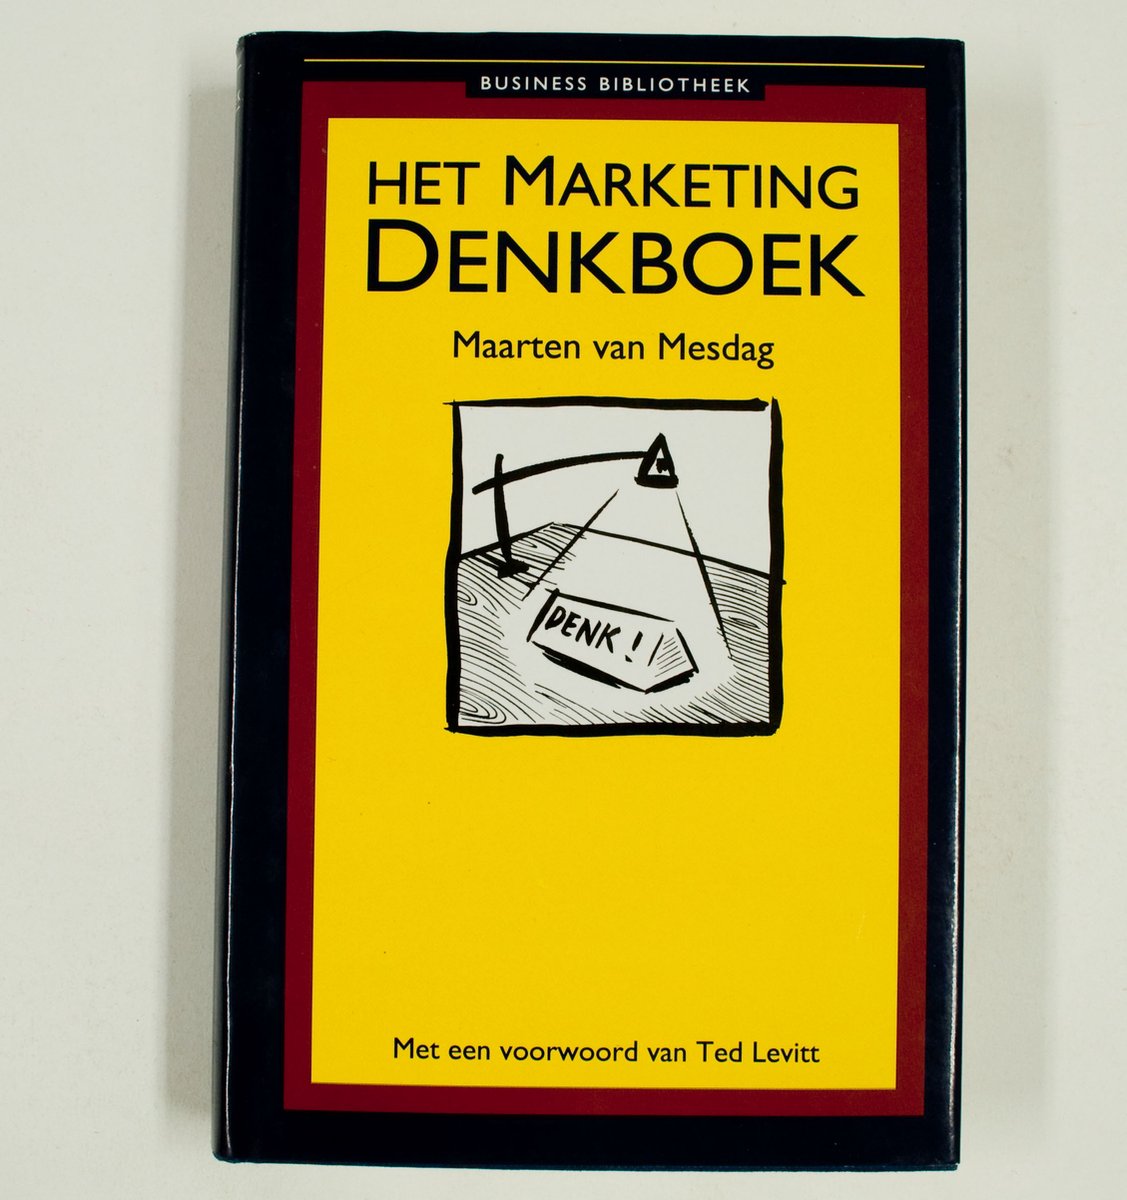 Marketing denkboek